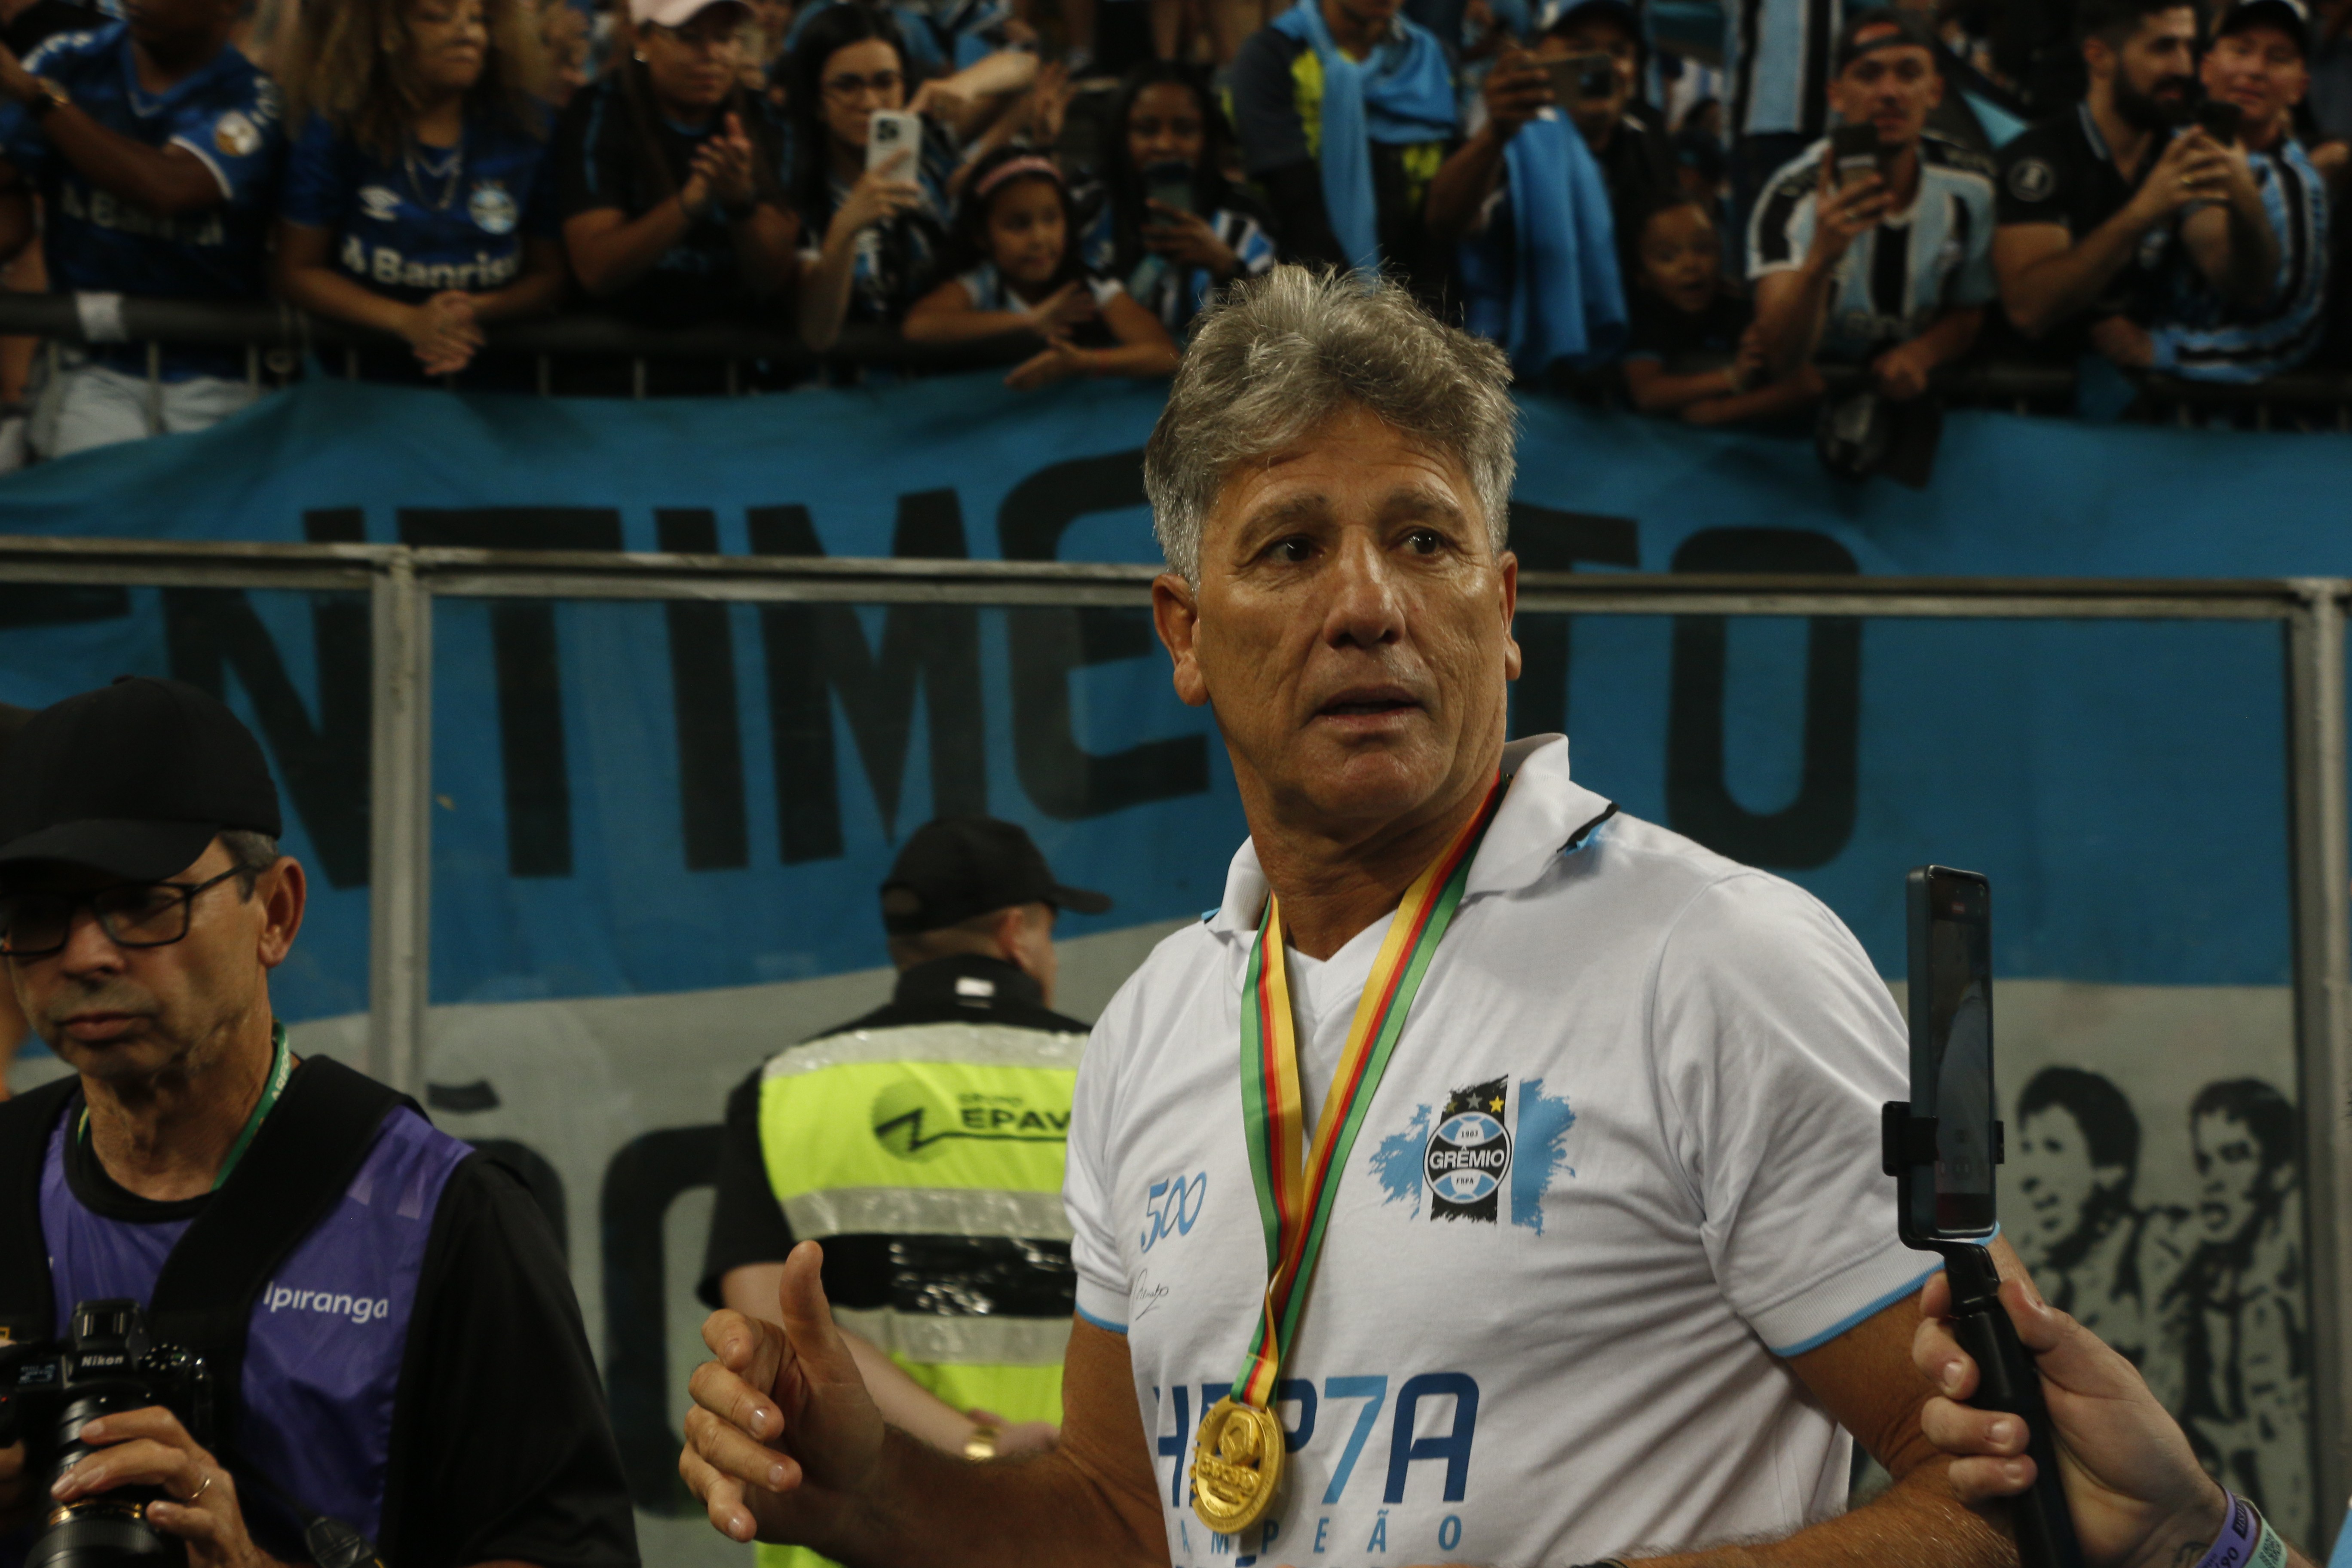 Análise: Renato lidera hepta de um Grêmio com mentalidade vencedora e que faz história